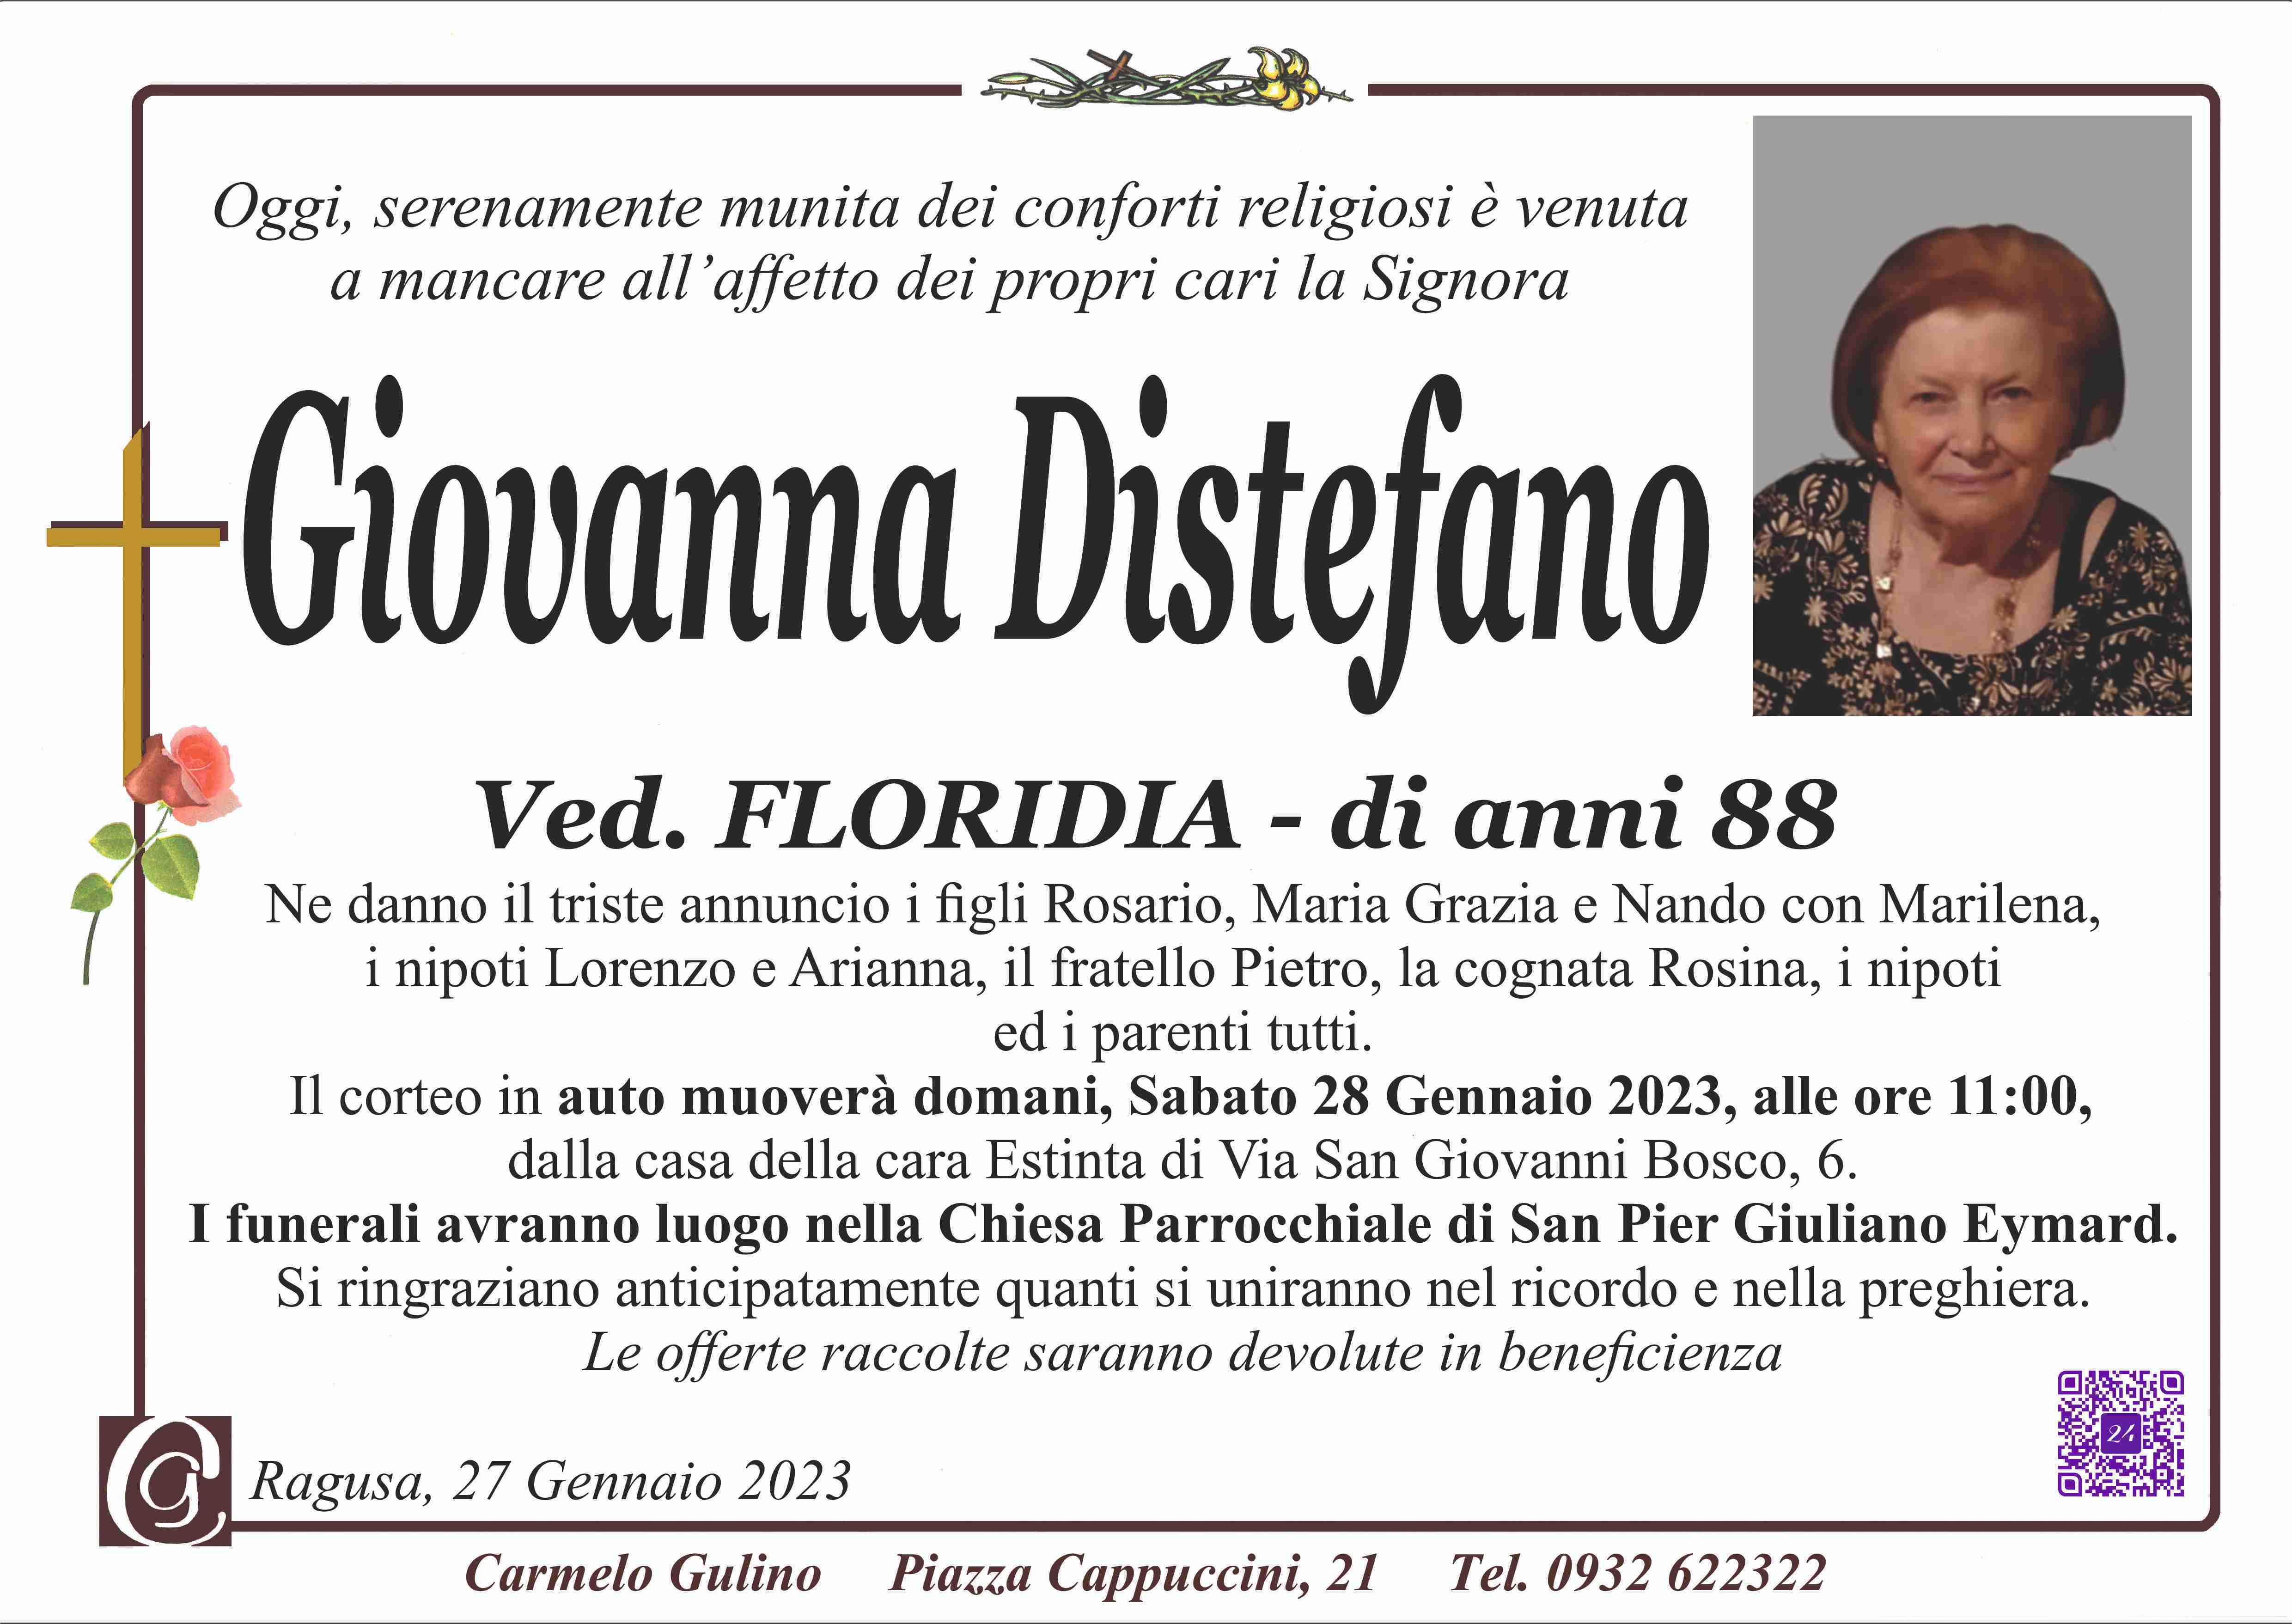 Giovanna Distefano